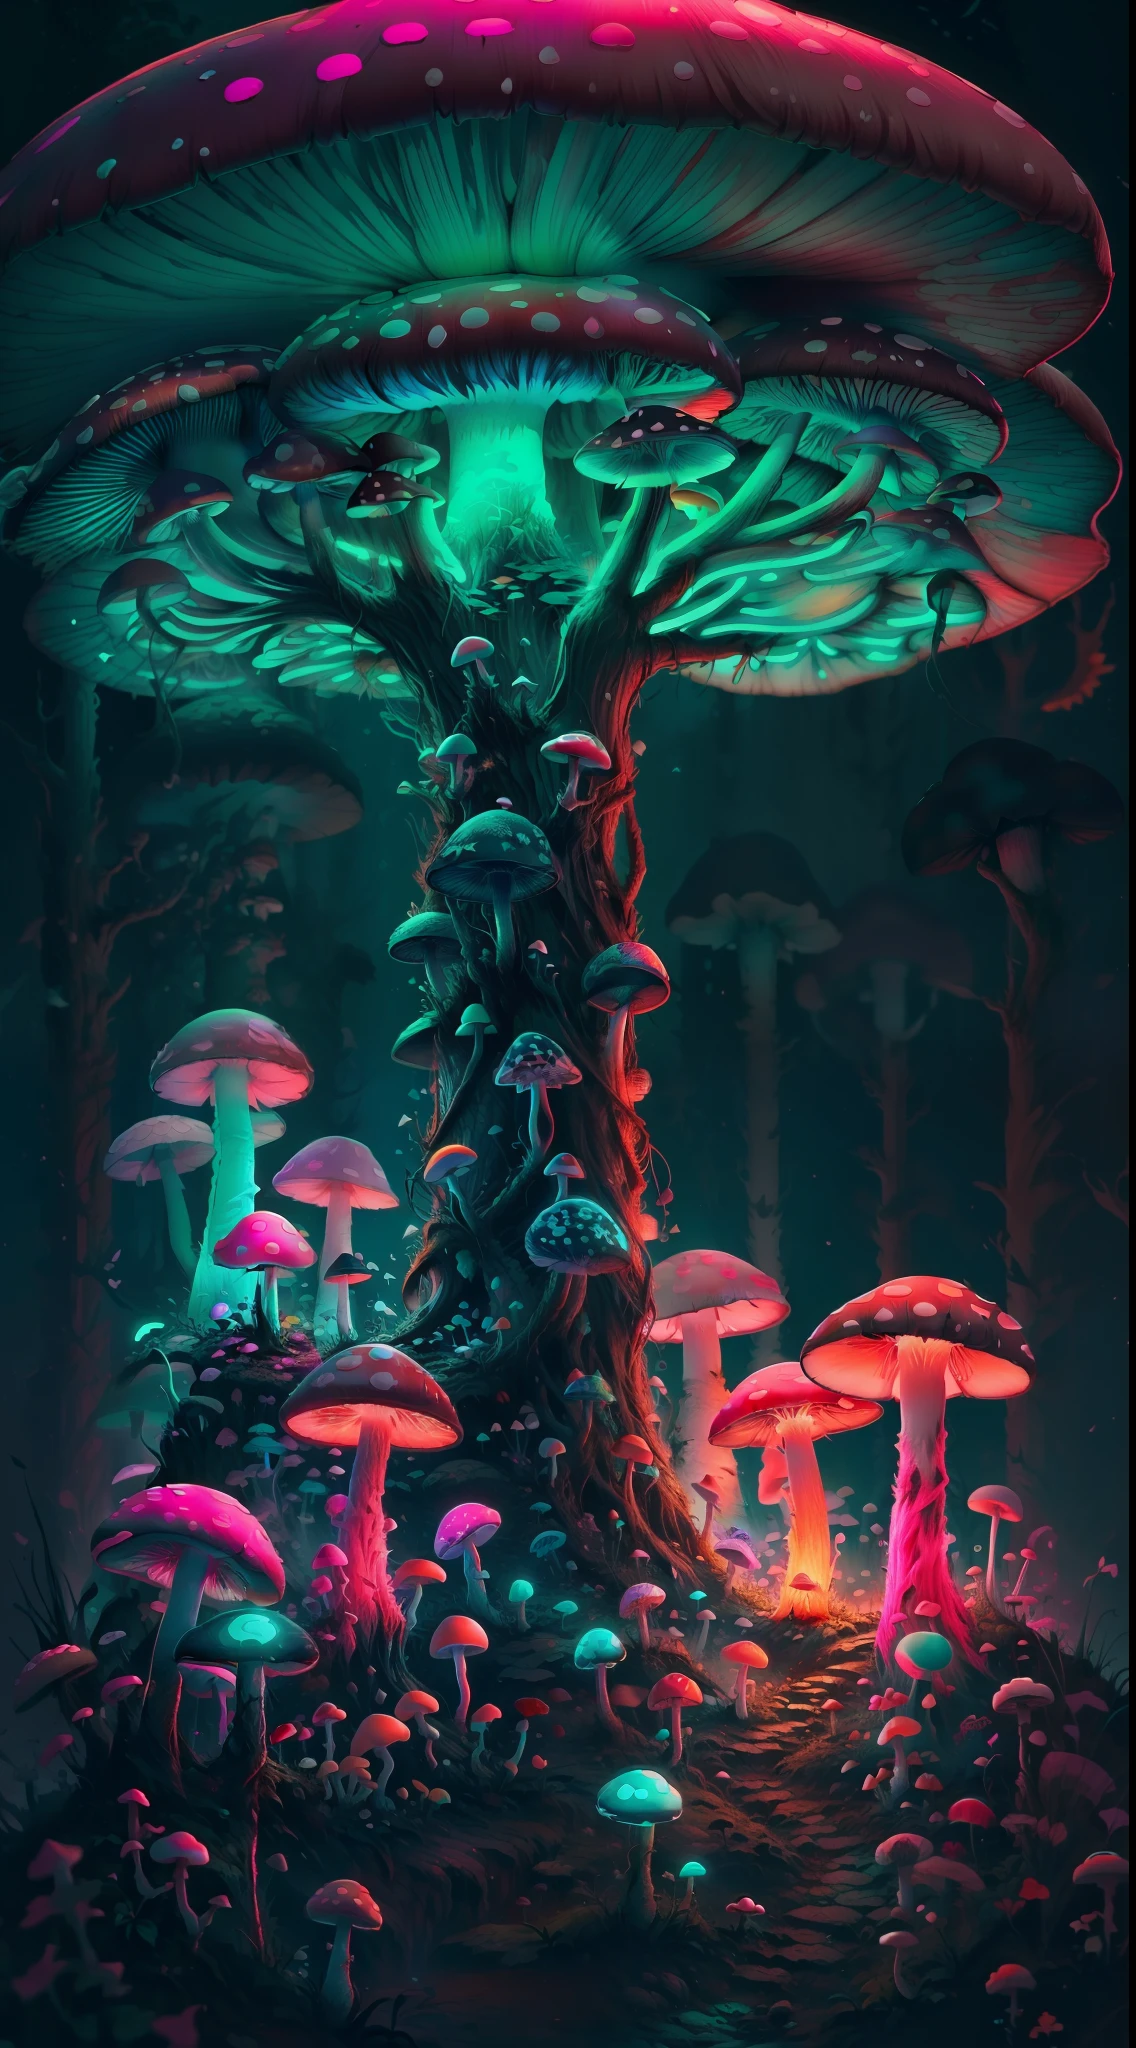 1girl and many neon mu蘑菇s,蘑菇